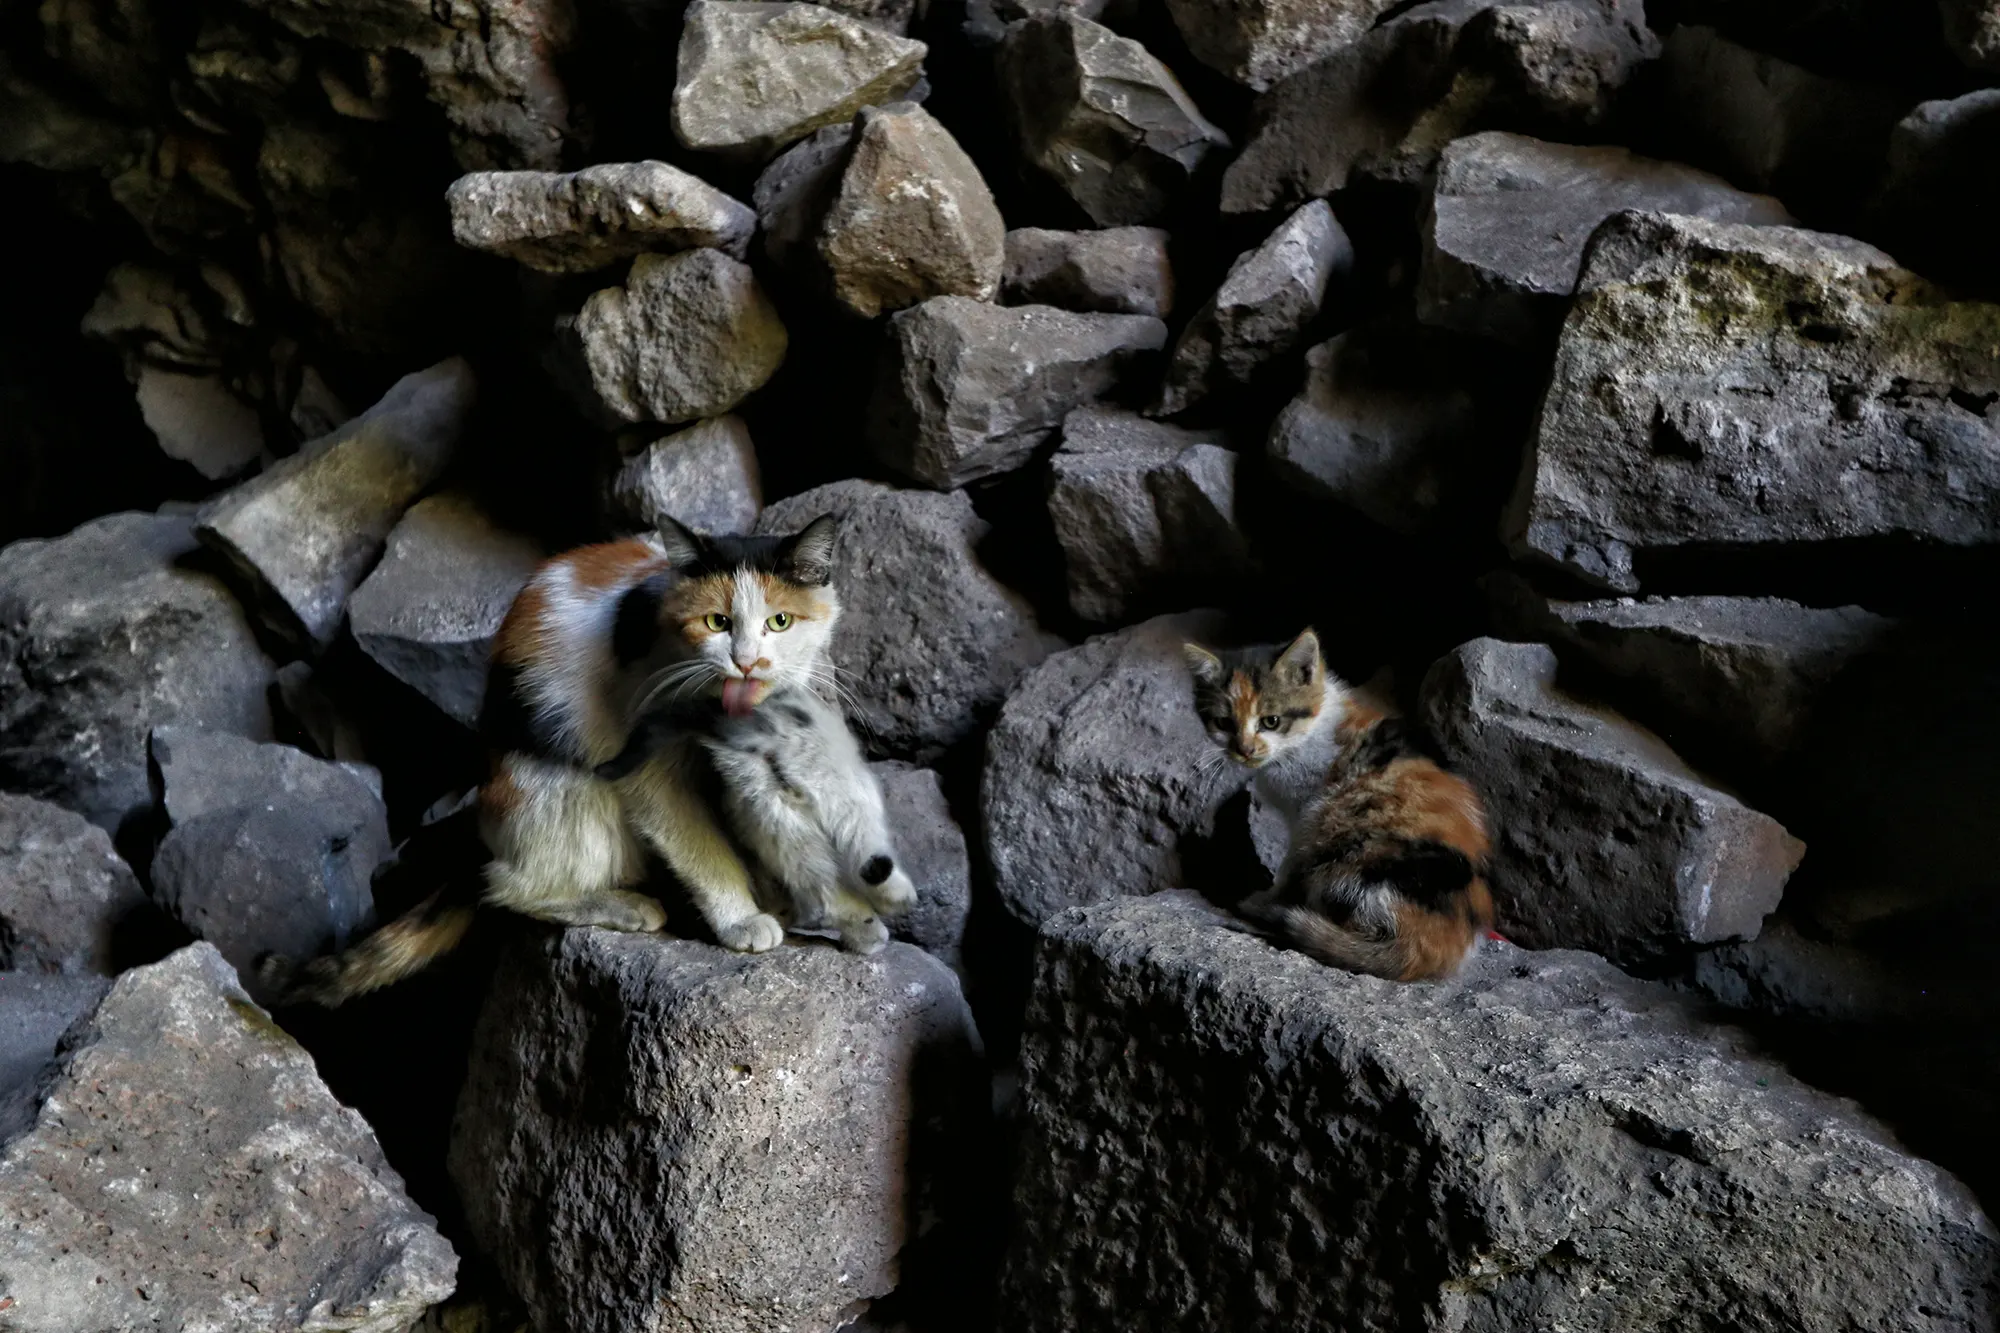 Diyarbakır, Turkije - Katten